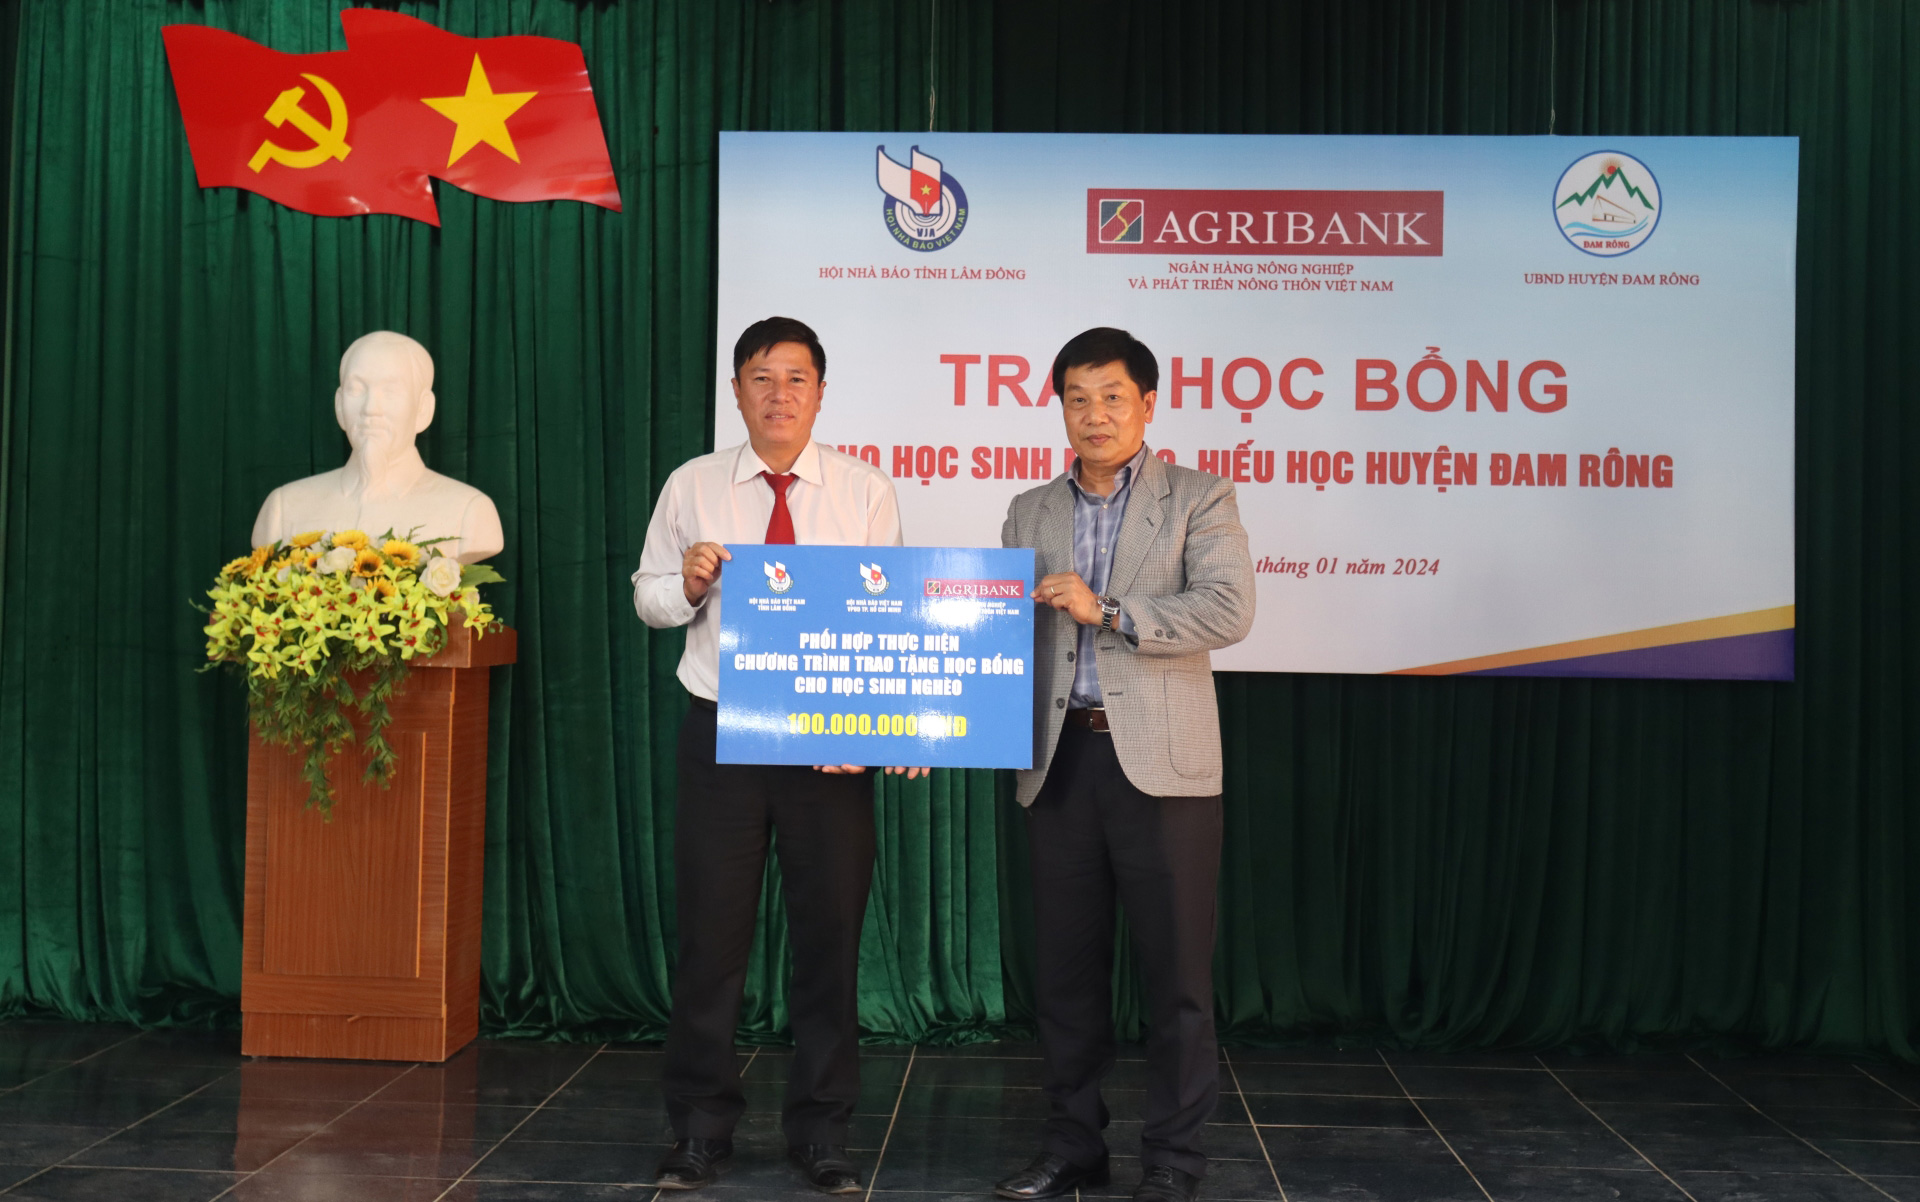 Trao 100 suất học bổng cho học sinh hiếu học huyện Đam Rông